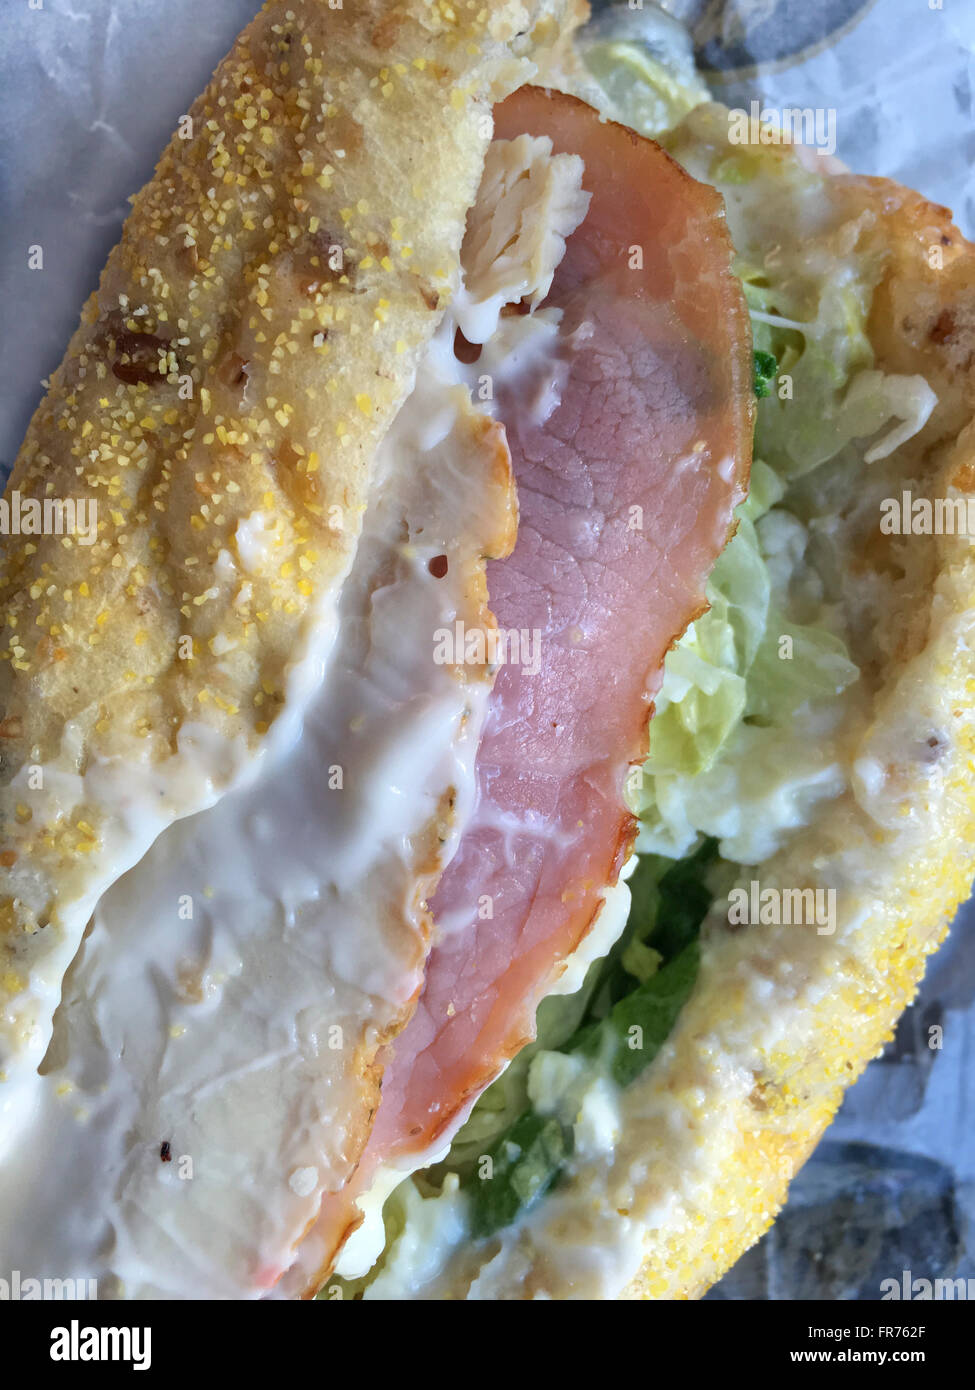 Primer plano de un submarino de sandwich con pollo, jamón, lechuga, espinaca, queso y mayonesa en multi-pan de grano. Foto de stock